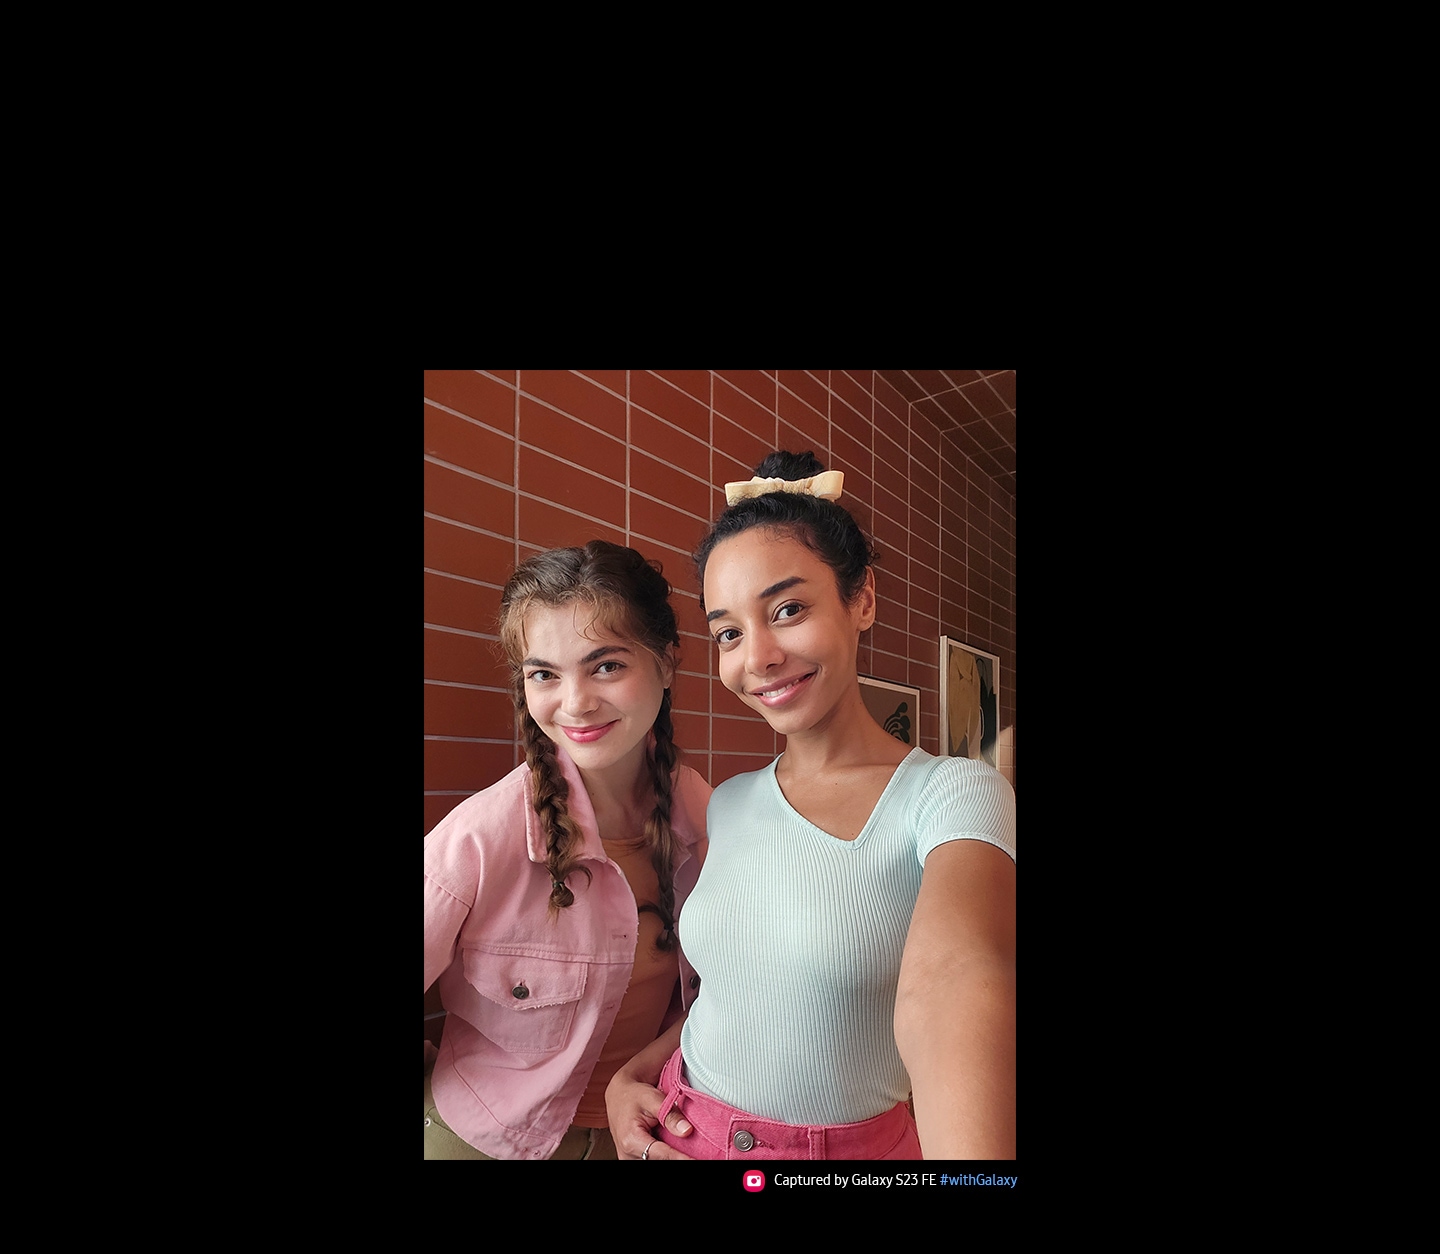 Dos mujeres se toman una selfie con el Galaxy S23 FE. La imagen tomada con su cámara frontal está en colores vívidos. Se lee el texto: “Capturado por Galaxy S23 FE #withGalaxy”.